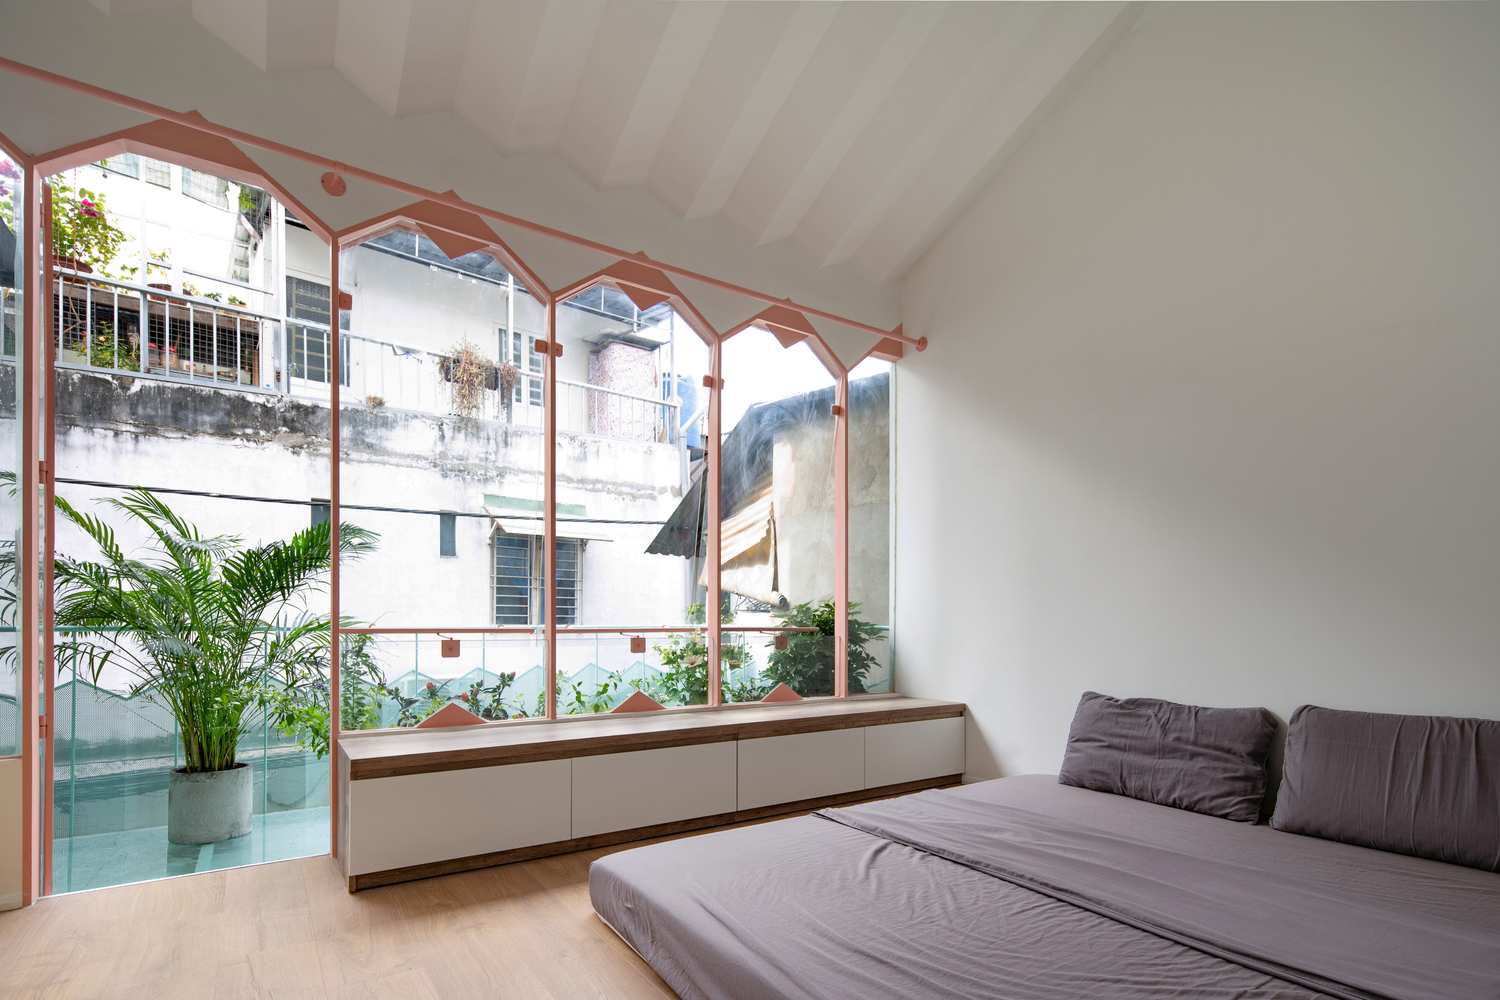 Hệ cửa sổ kính trong suốt với phần trên hình tam giác cho phép ánh sáng tự nhiên ngập tràn không gian phòng ngủ.